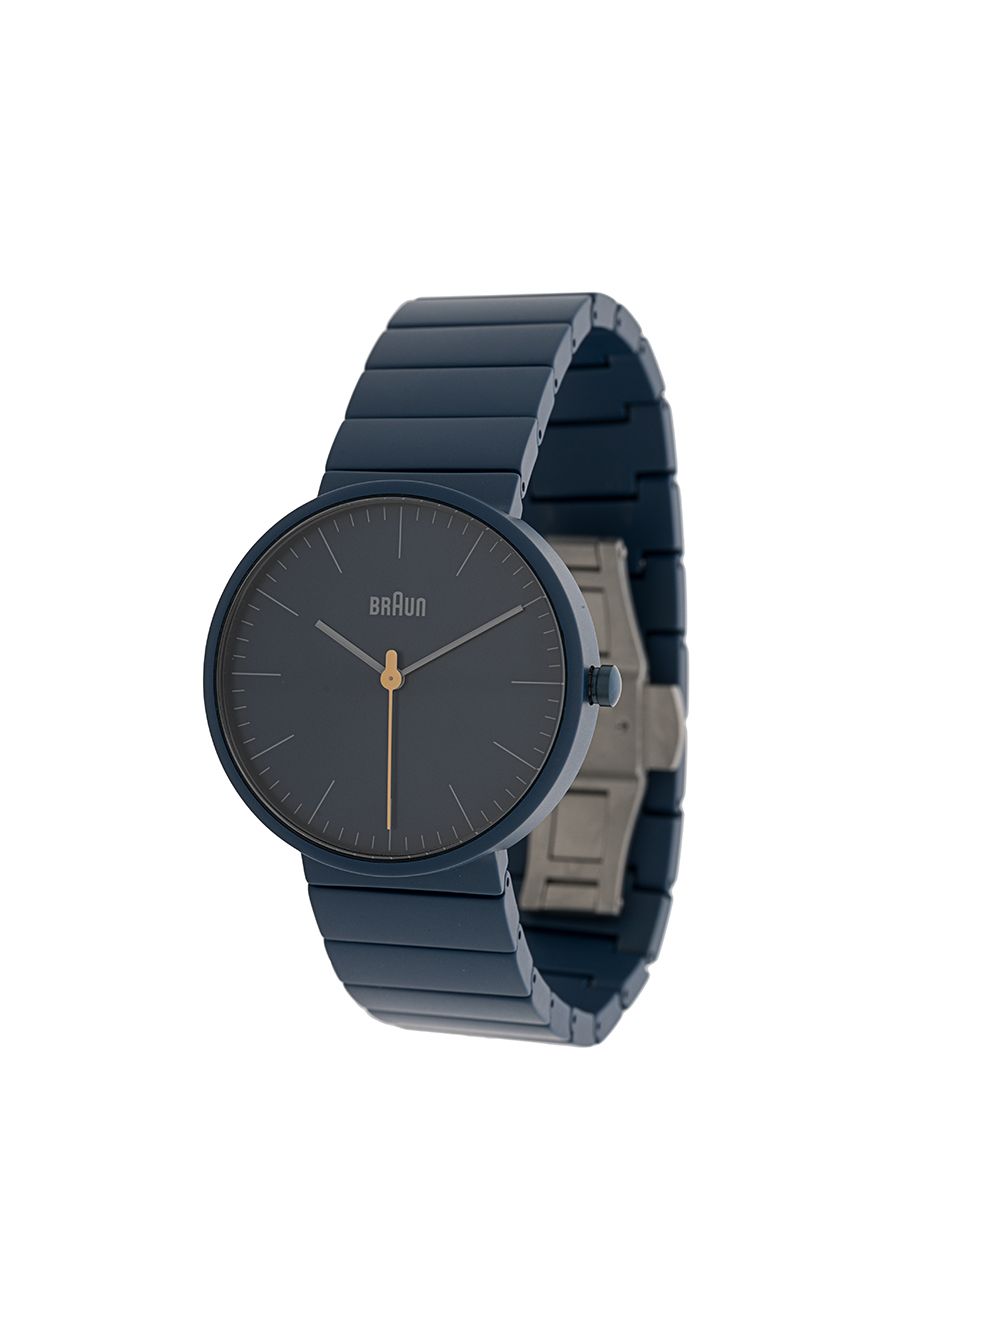 Braun Watches 'BN0171' Armbanduhr, 40mm - Blau von Braun Watches